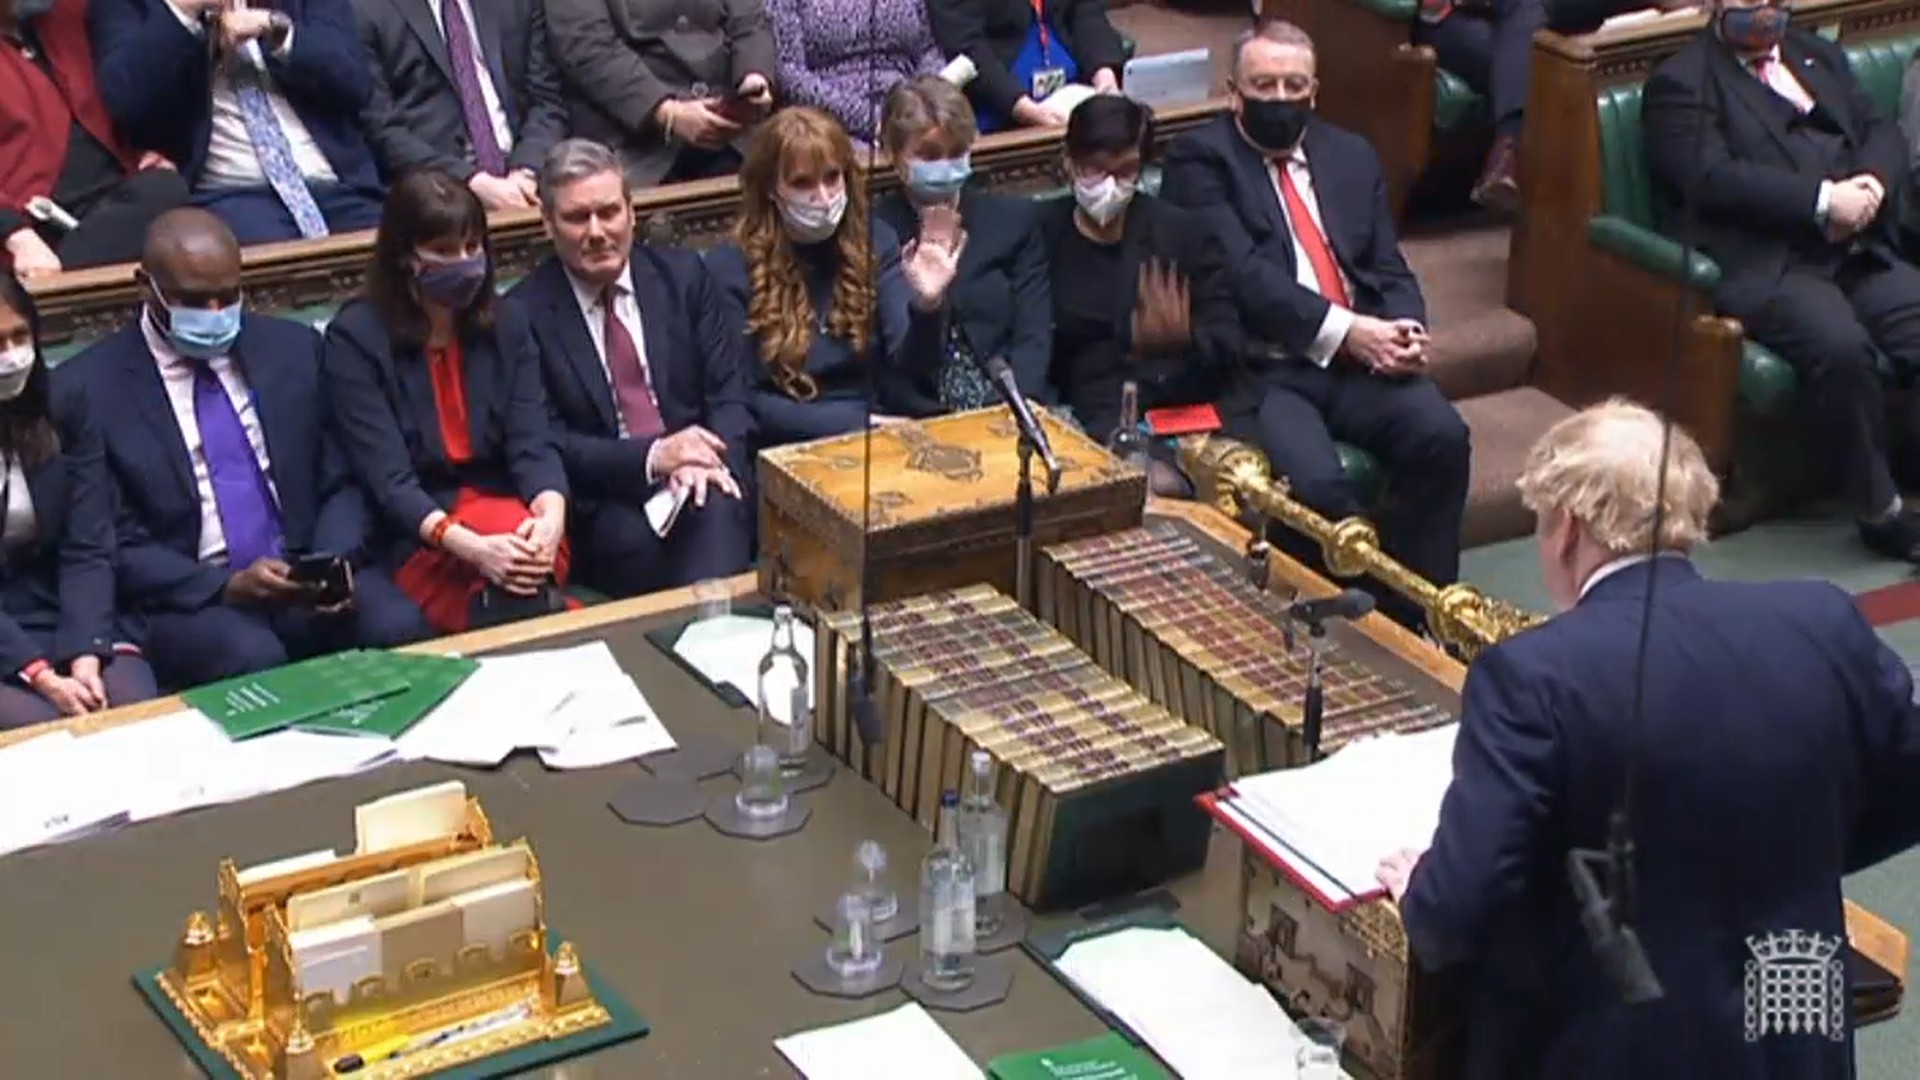 A deputada inglesa Angela Rayner com a mão levantada, pedindo a palavra, durante passagem de Boris Johnson pelo parlamento britânio (Foto: Getty Images)